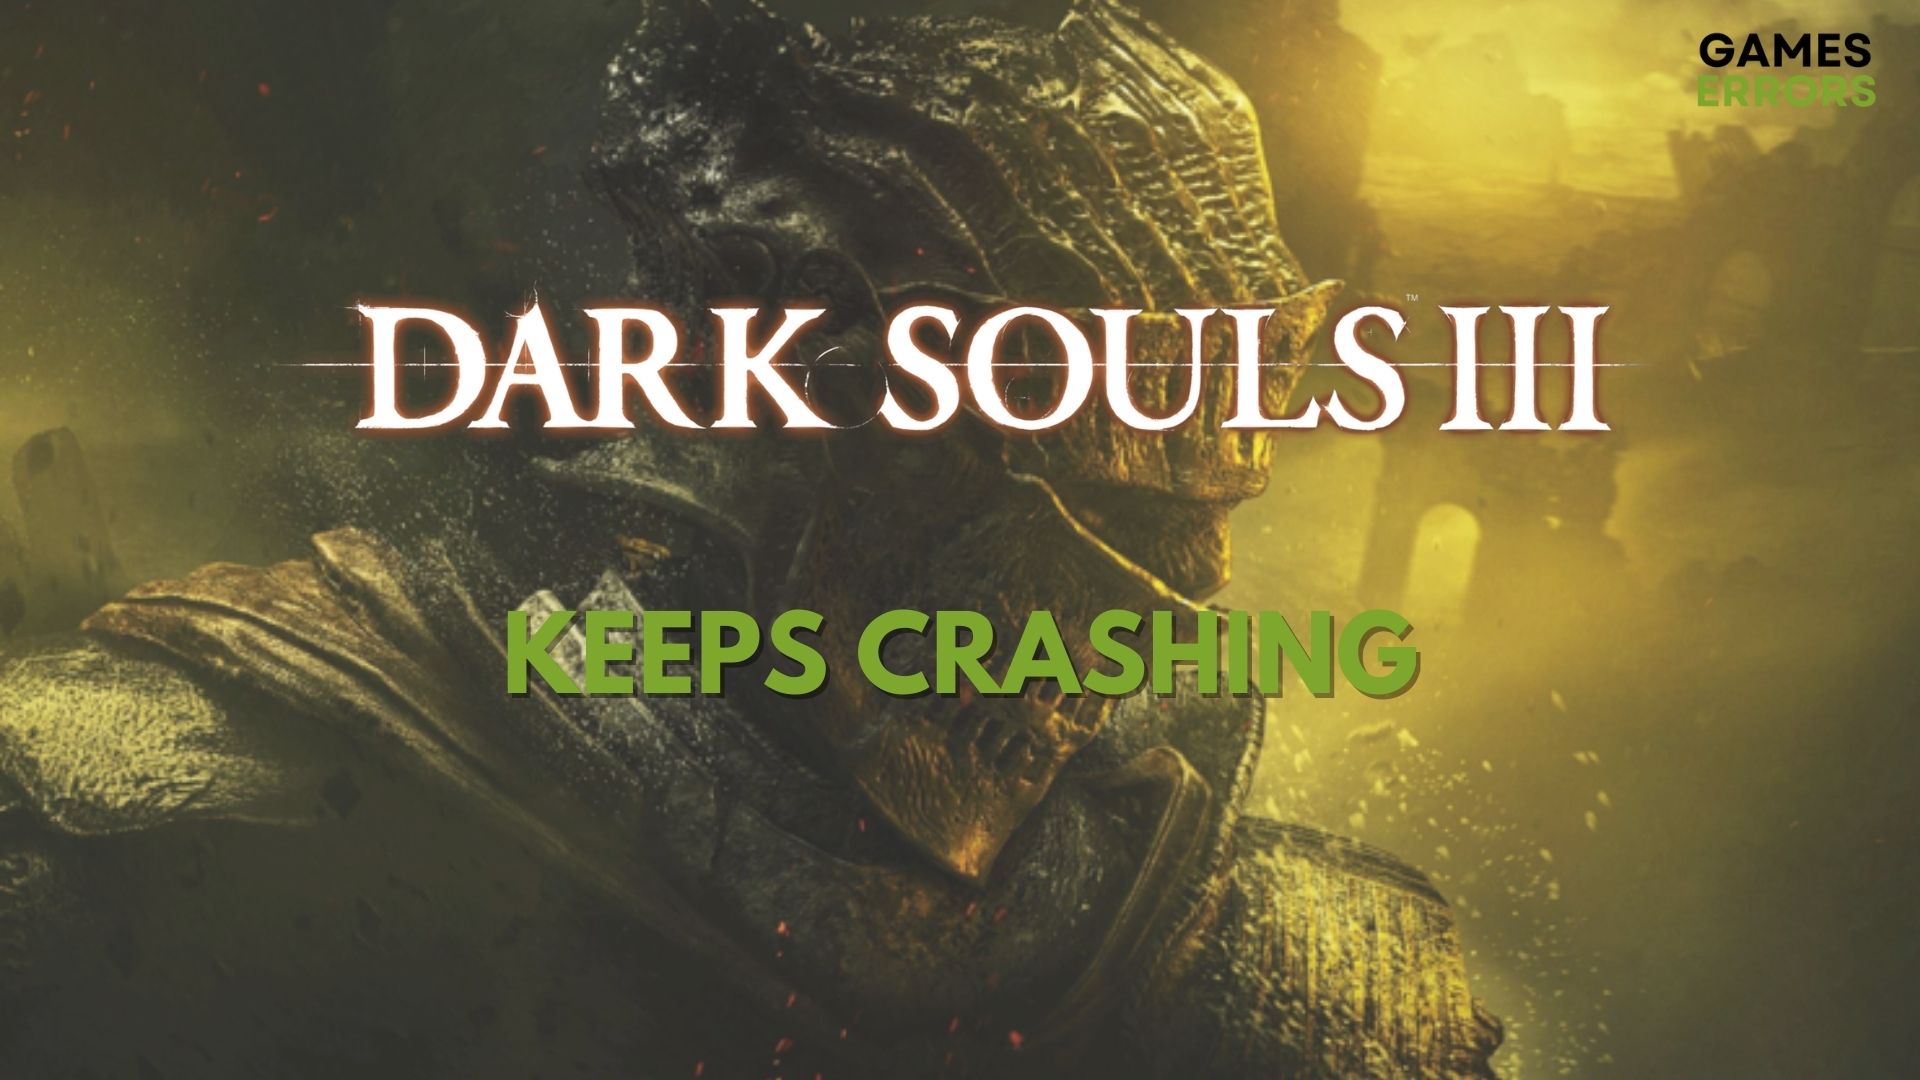 Dark Souls 3 Keep Crashing on PC